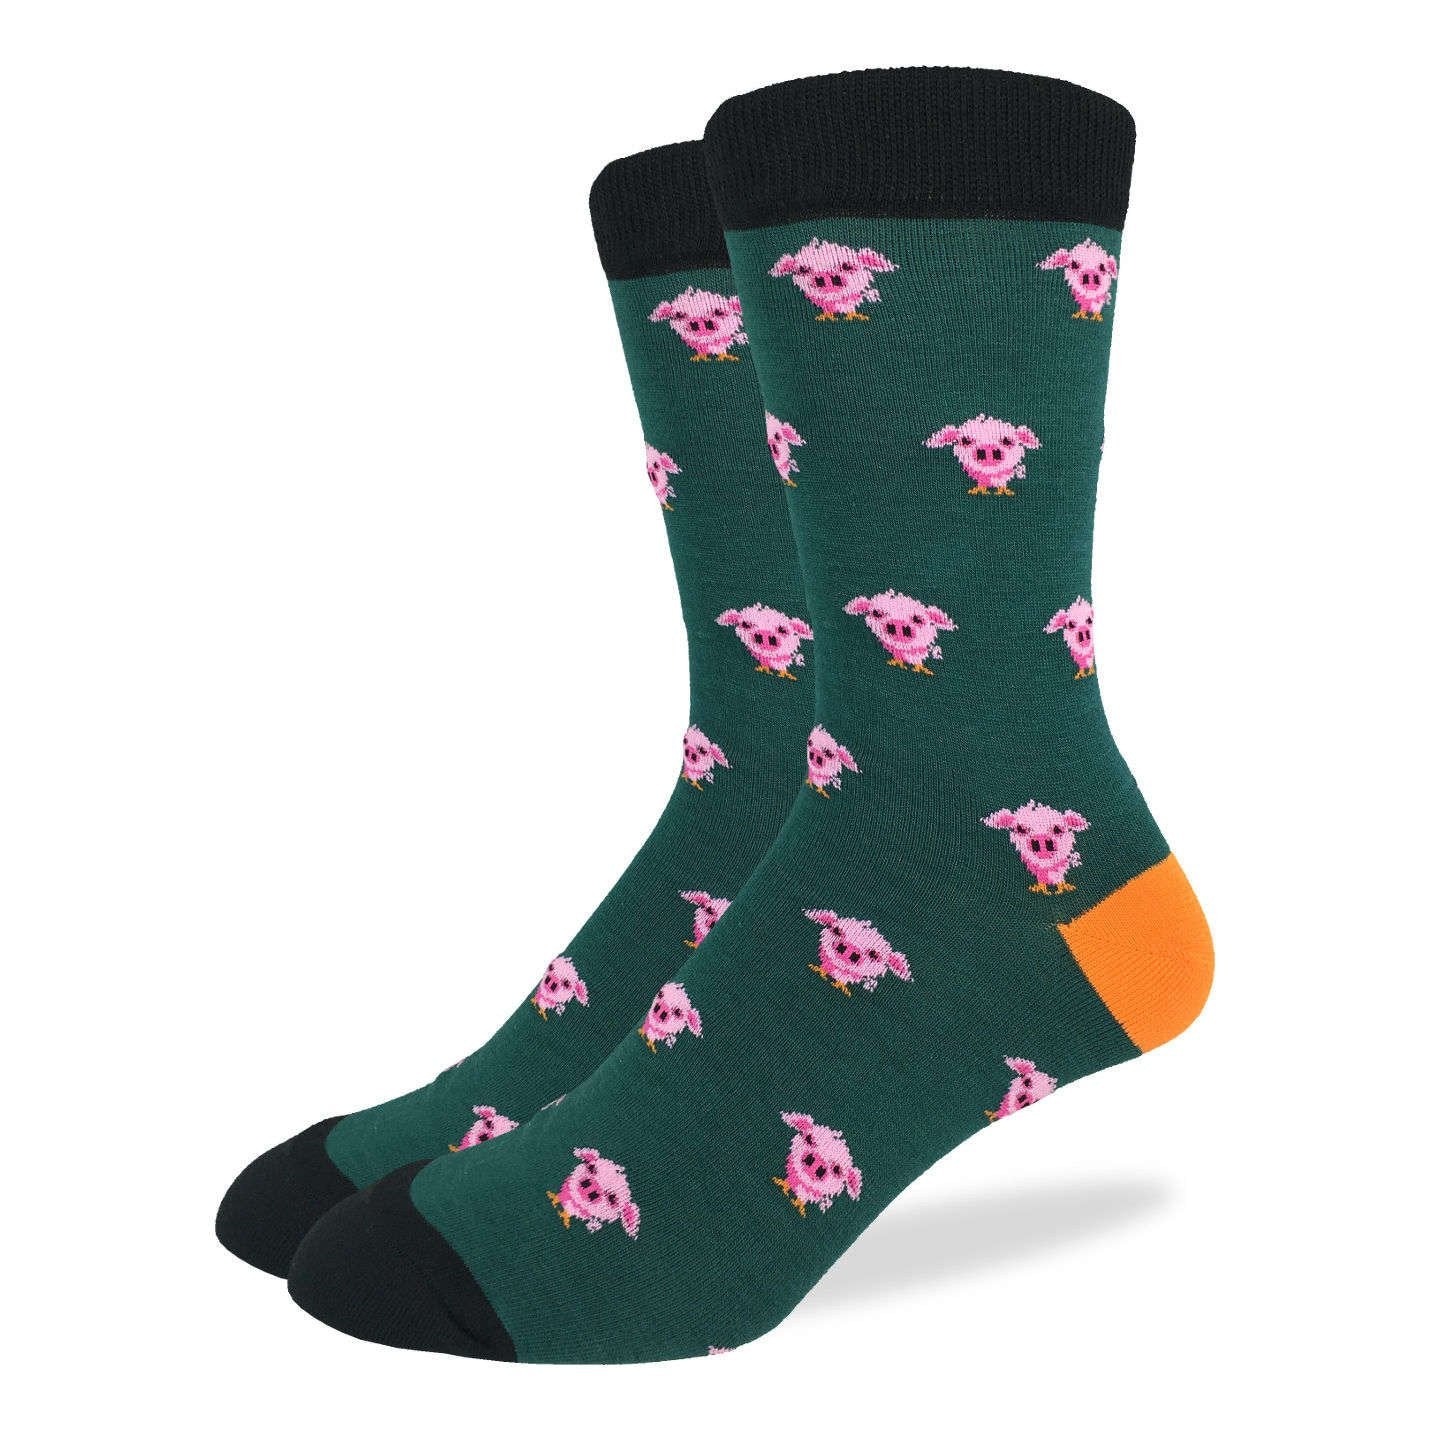 Men's Green Pig Socks – Good Luck Sock